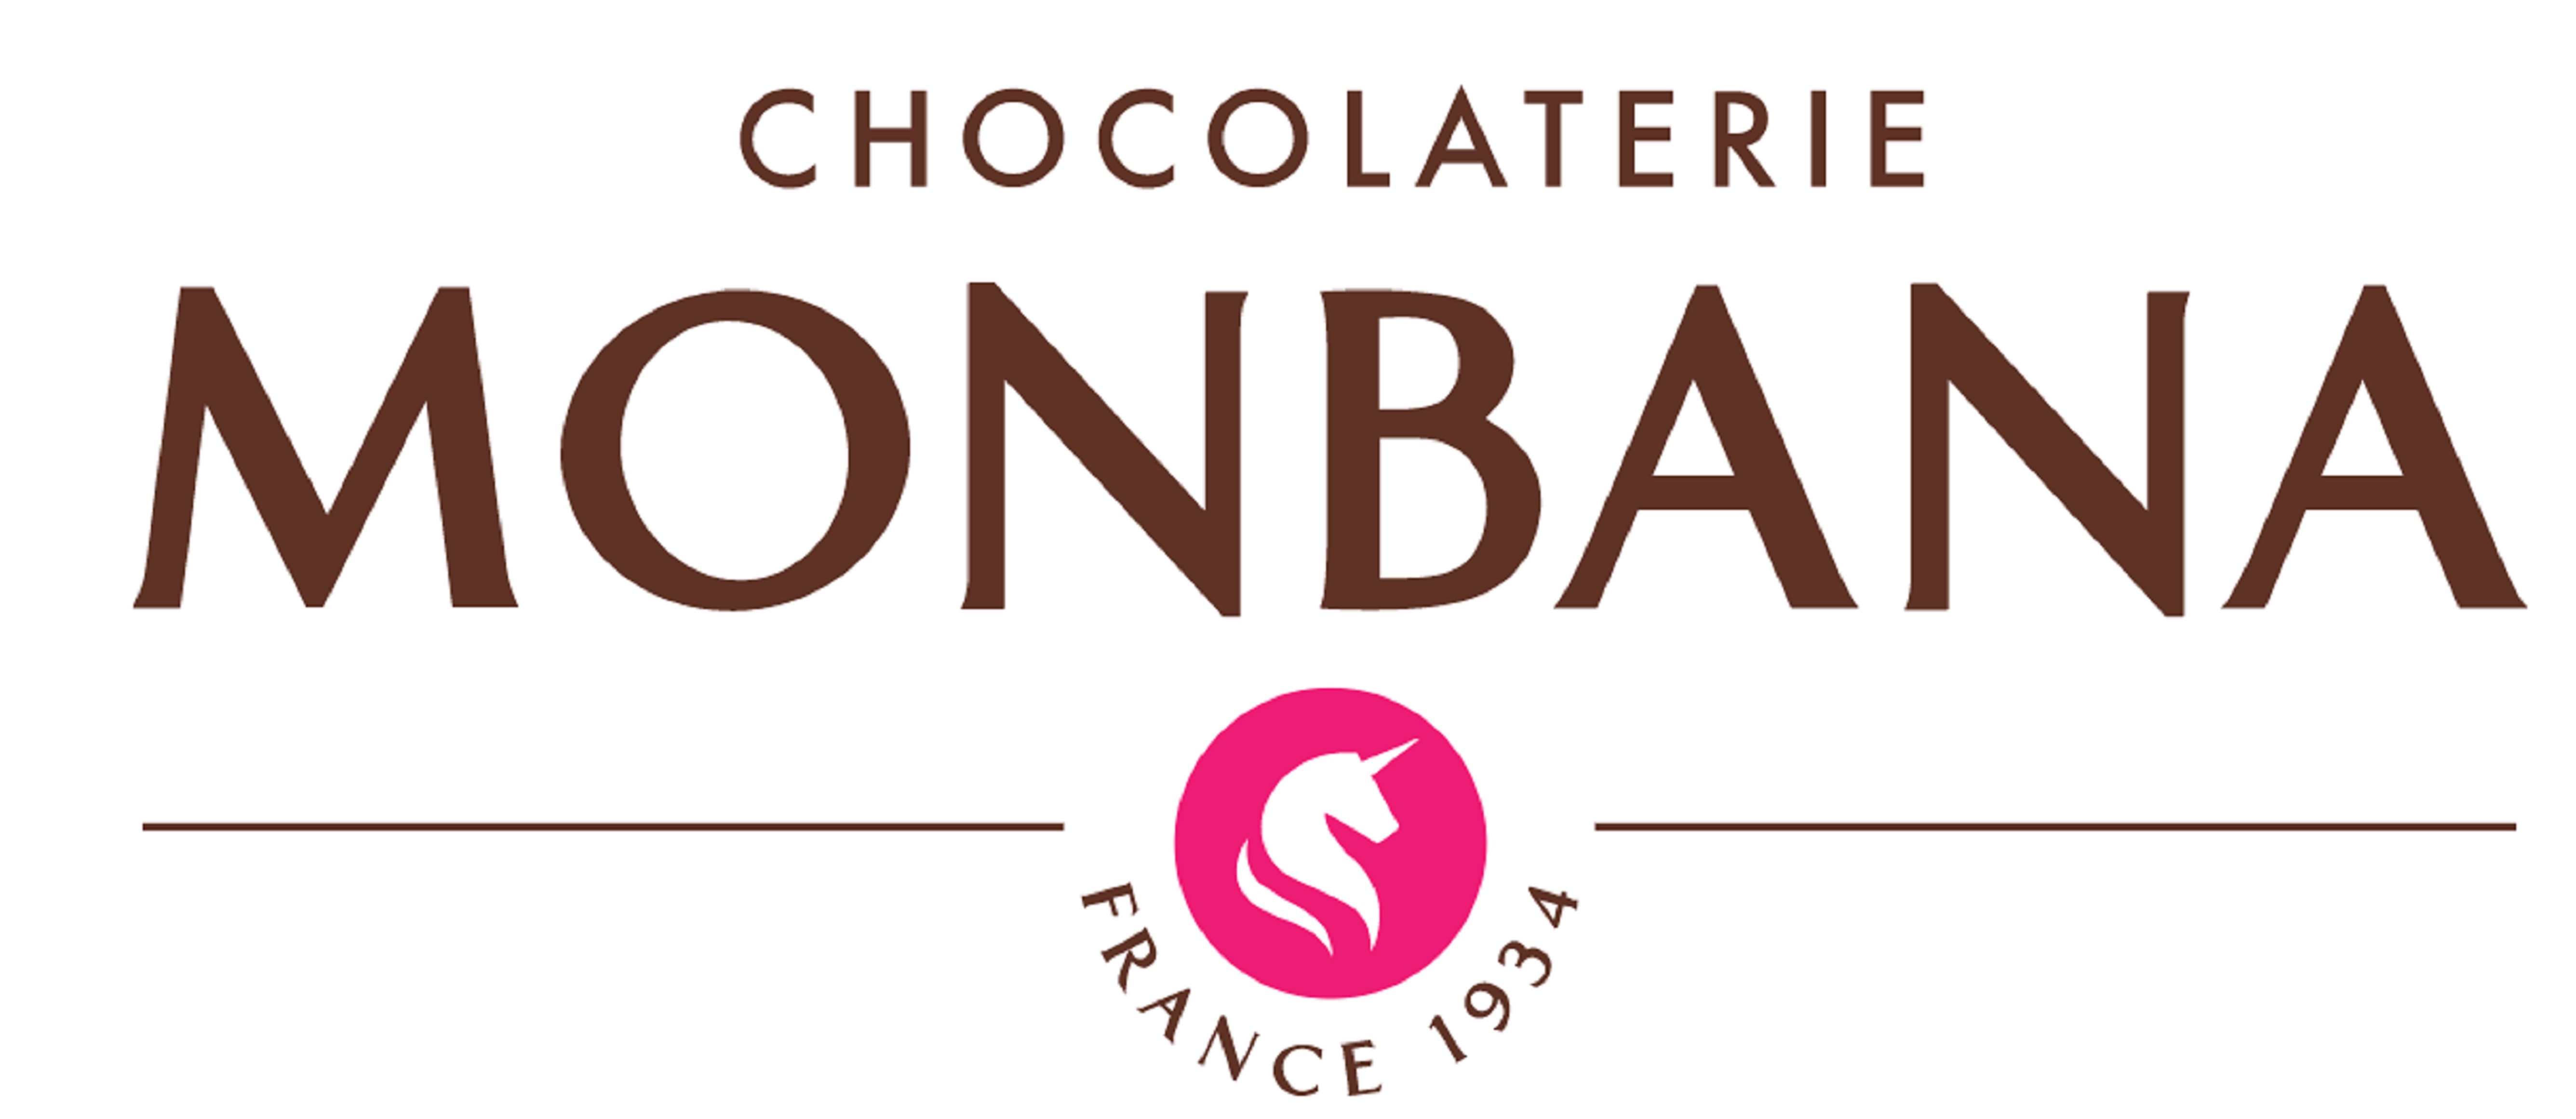 Esta marca garantiza un chocolate de manteca pura de cacao 100%. El chocolate Monbana se fabrica seleccionando únicamente las mejores variedades de cacao provenientes en su mayor parte de la Costa de Marfil, Ghana y América del Sur.